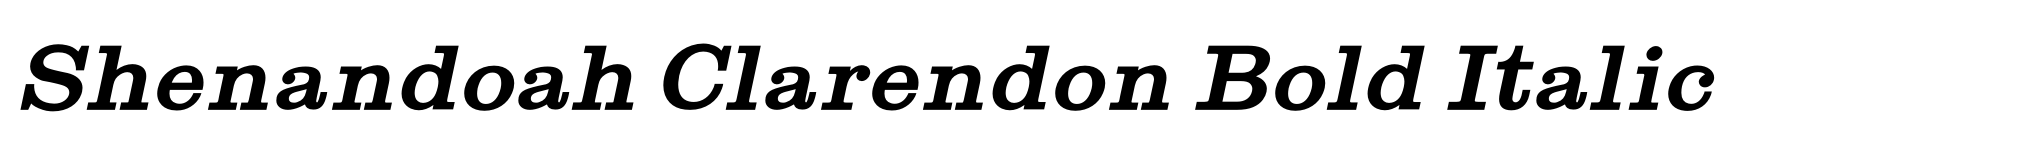 Shenandoah Clarendon Bold Italic image